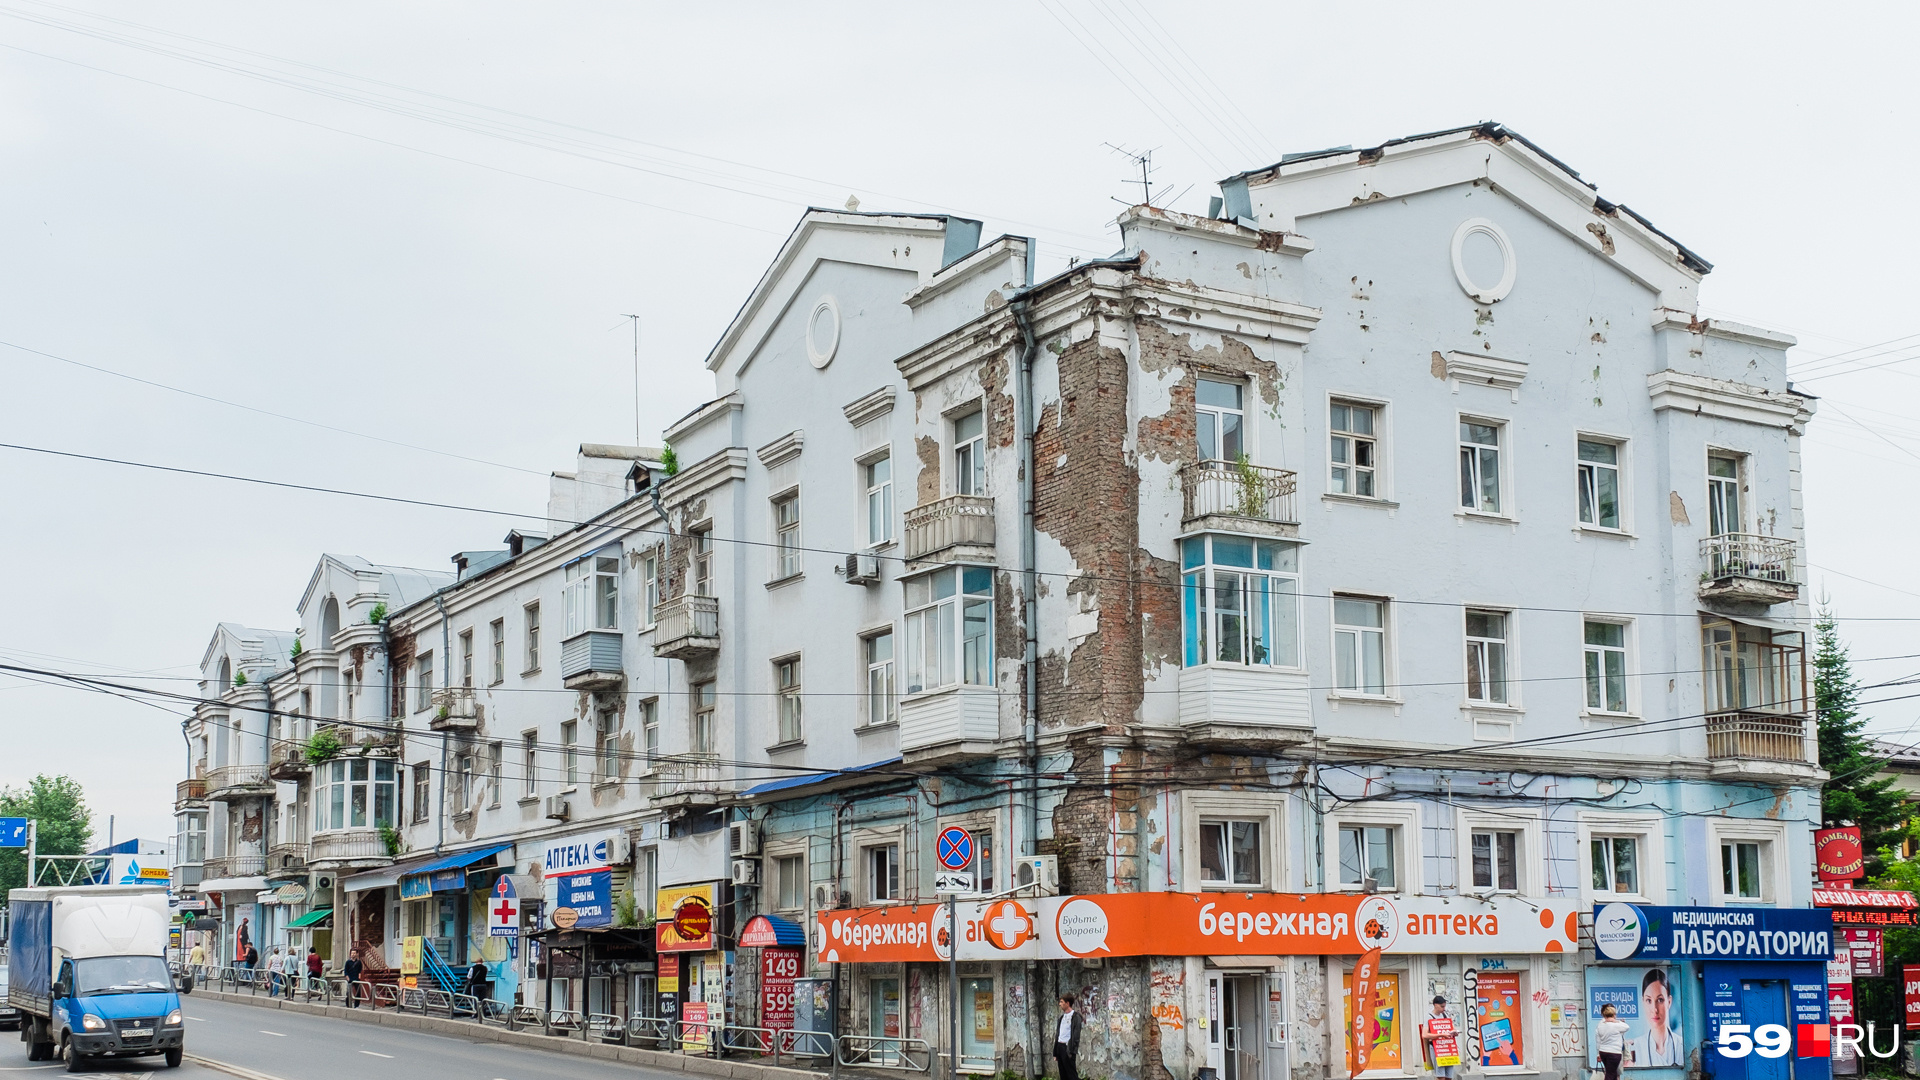 Со стороны улицы Луначарского дом четырехэтажный, а со стороны Попова — трех-